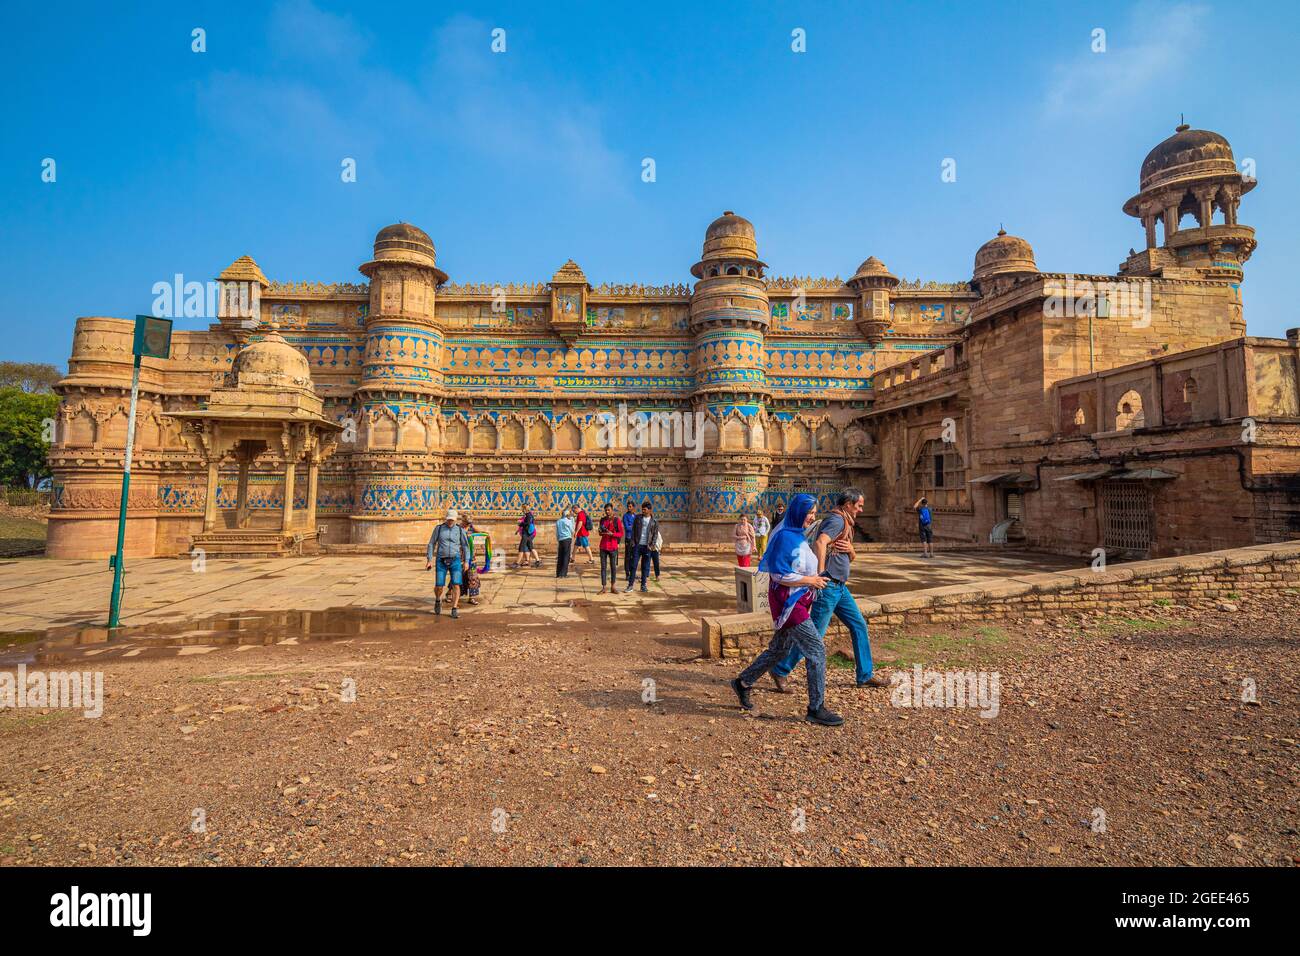 Gwalior Madhya Pradesh India February 17 Stock Photo 2324427209 |  Shutterstock